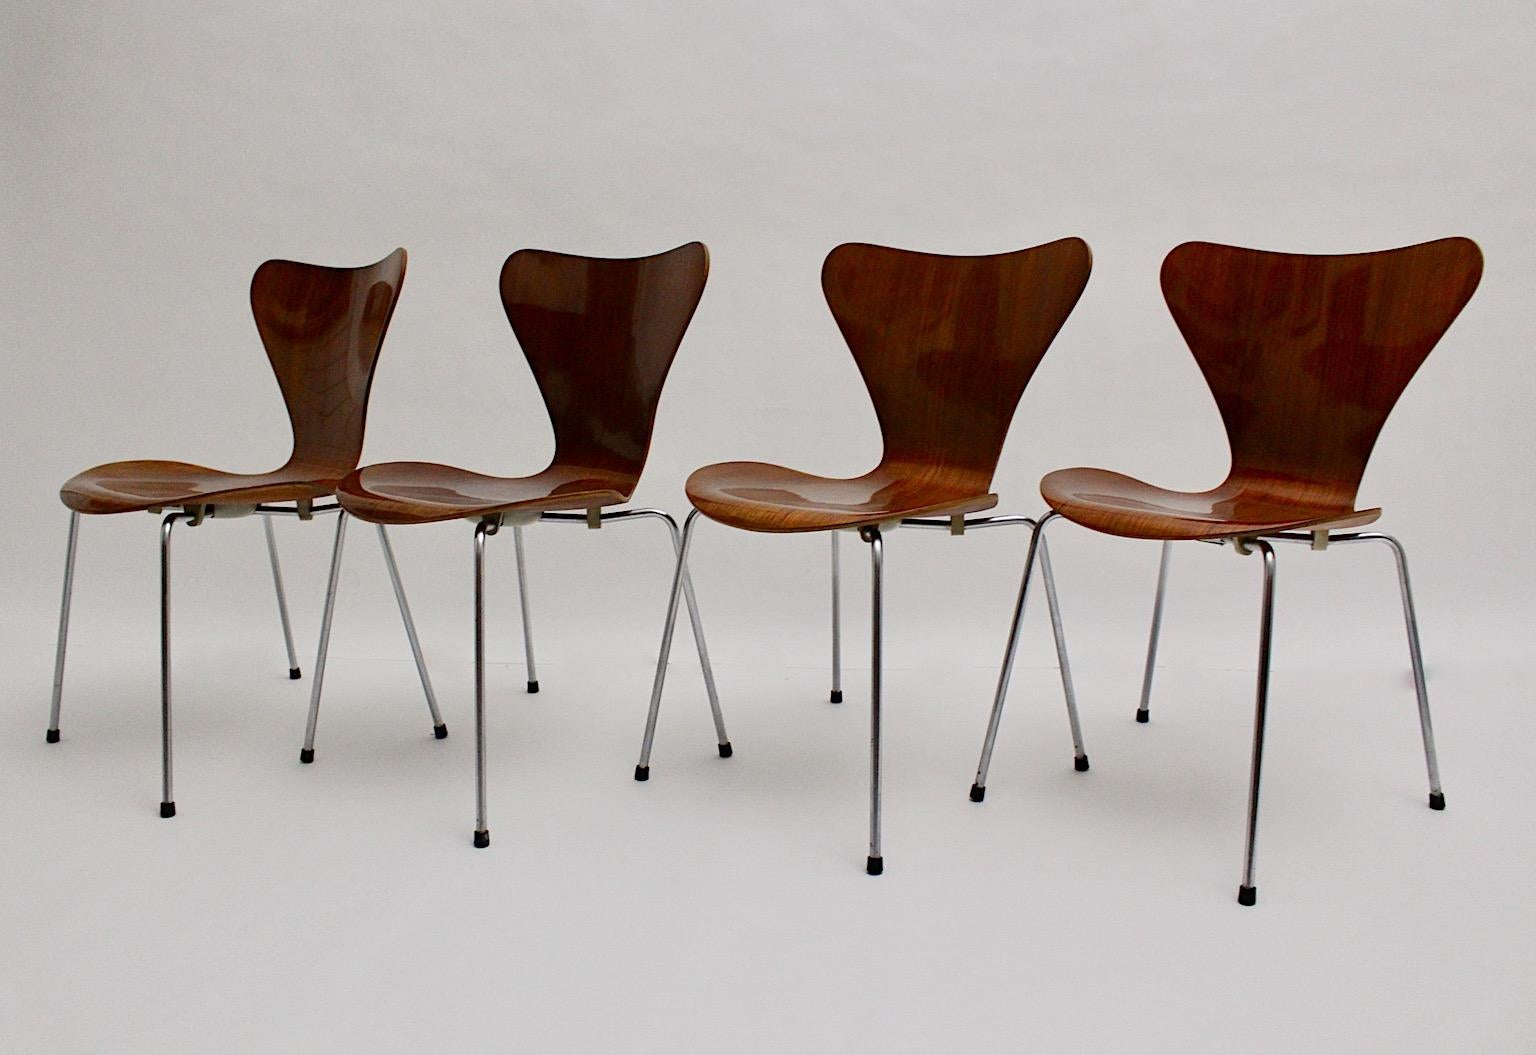 Modernist Mid Century Modern Vintage authentische Esszimmerstühle Modell Satz von vier ( 4 ) Modellnummer 3107 entworfen von Arne Jacobsen, circa 1955 und produziert von Fritz Hansen, Dänemark, 1960er Jahre.
Auf der Unterseite mit dem Namen des